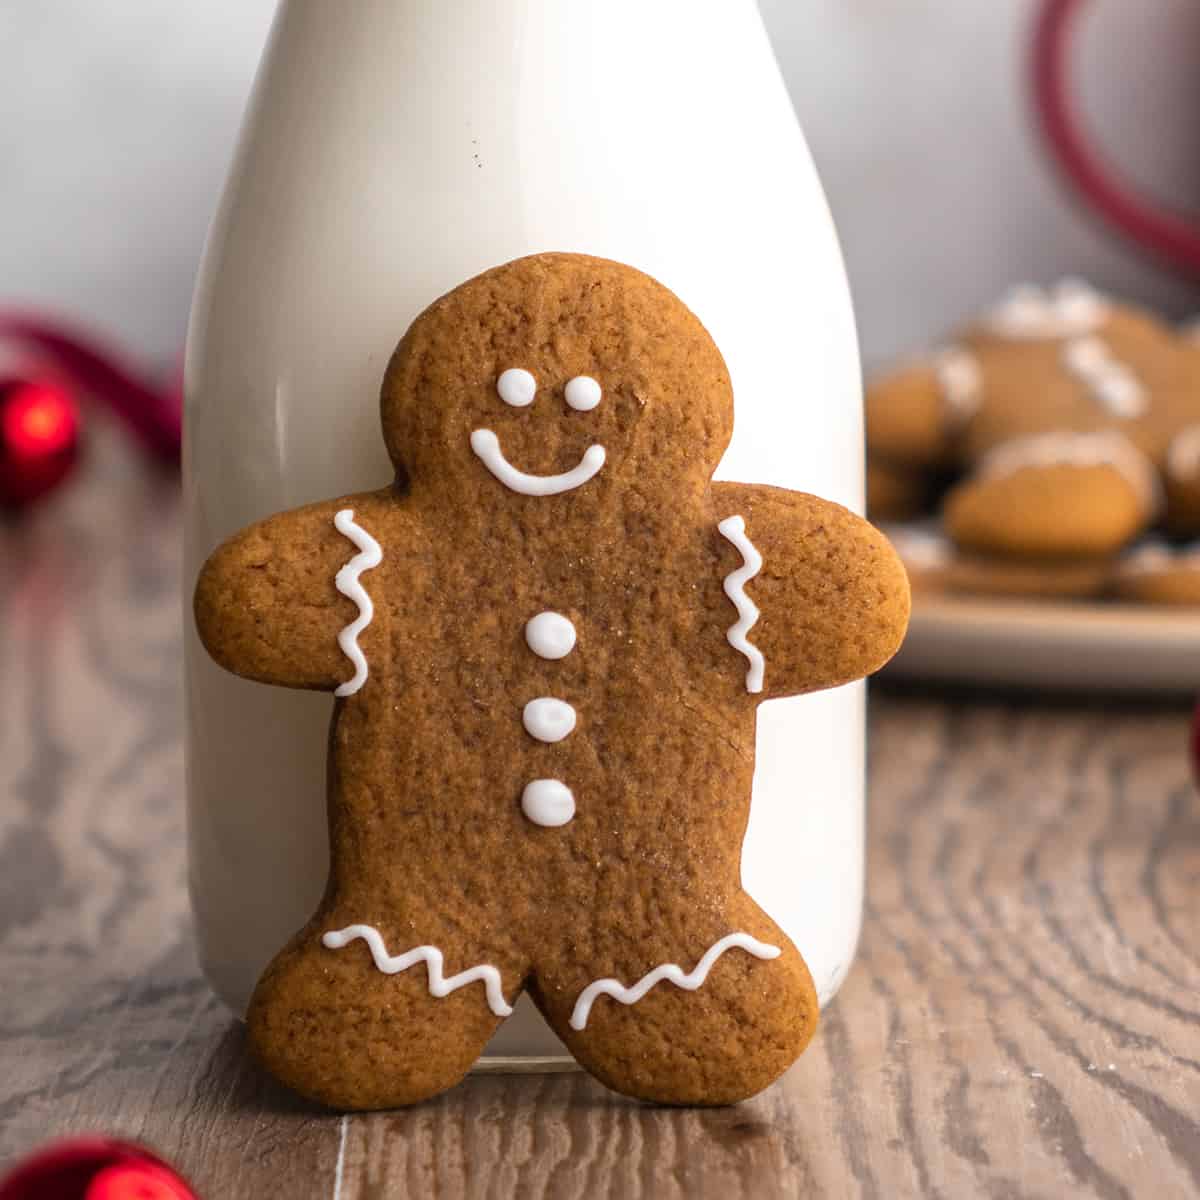 Best Christmas Cookies - gingerbread man cookies